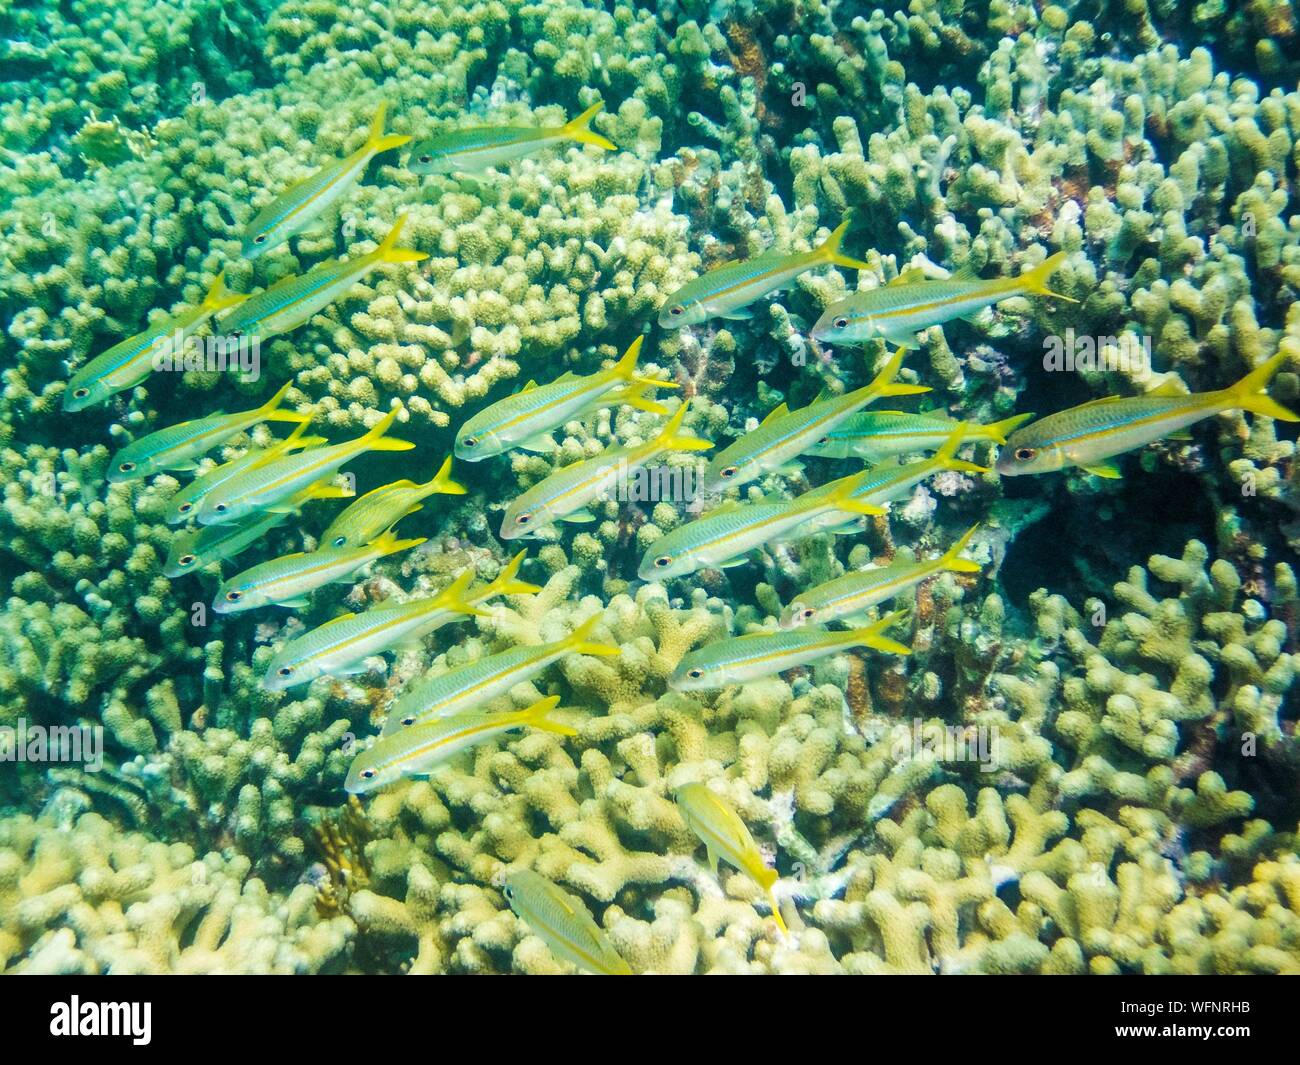 Frankreich, Karibik, Kleine Antillen, Guadeloupe, Grand Cul-de-Sac Marin, das Herz der Guadeloupe National Park, Schnorcheln in der Lagune rund um die Insel Fajou, hier eine Schule von Cola-getränken Fisch in der Mitte der Korallen, unterwasser anzeigen Stockfoto